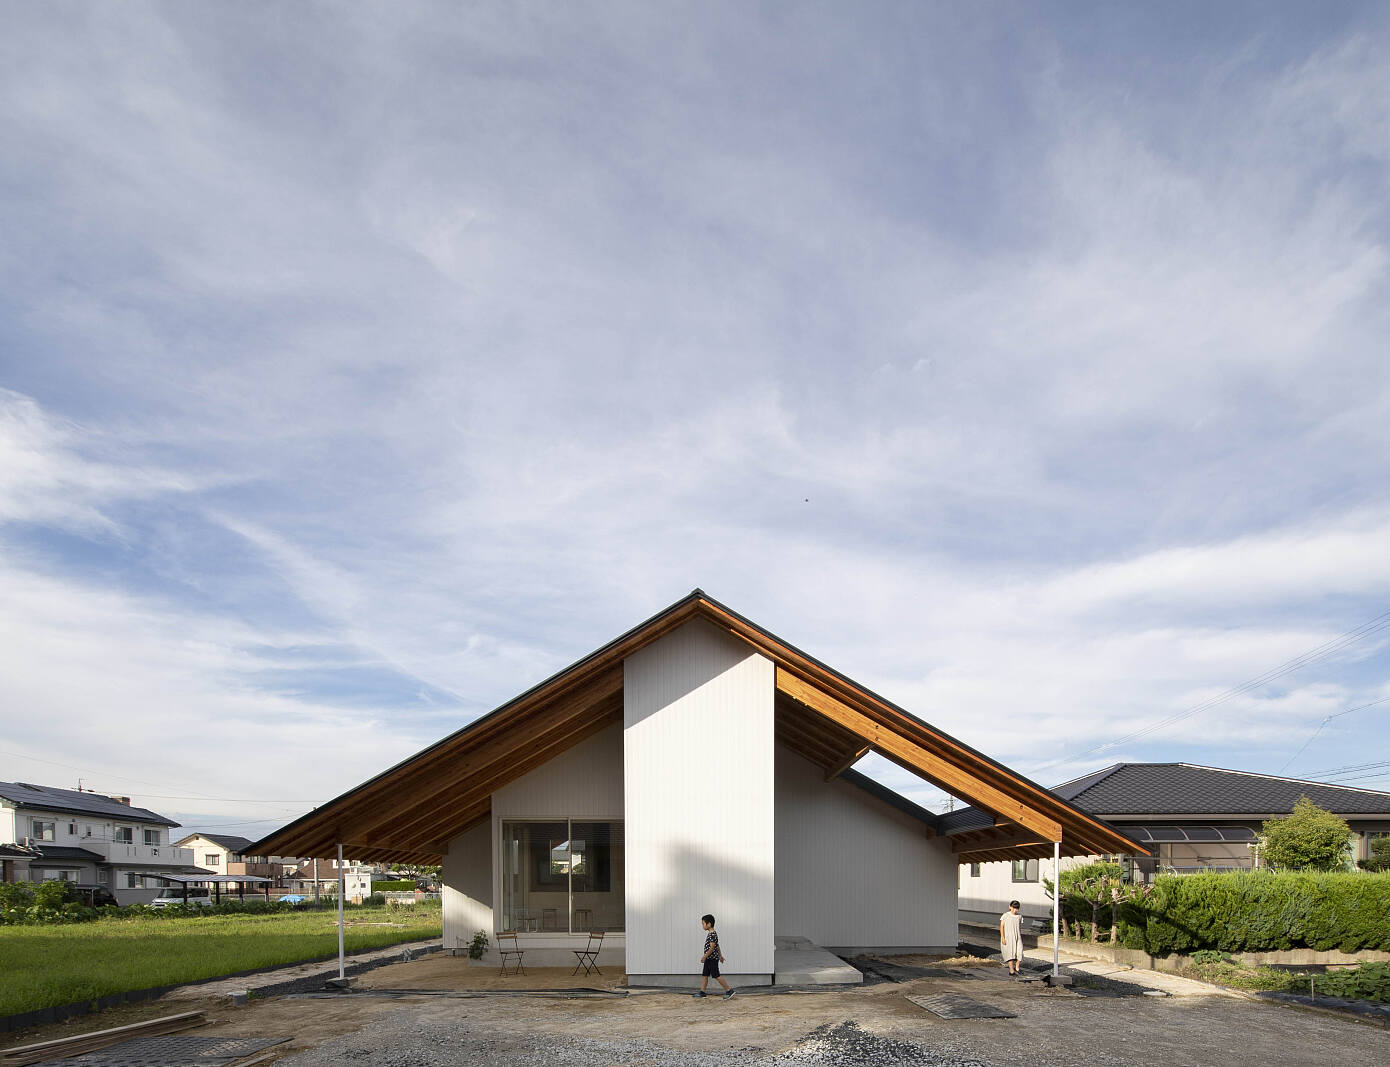 Kasa House by Katsutoshi Sasaki + Associates